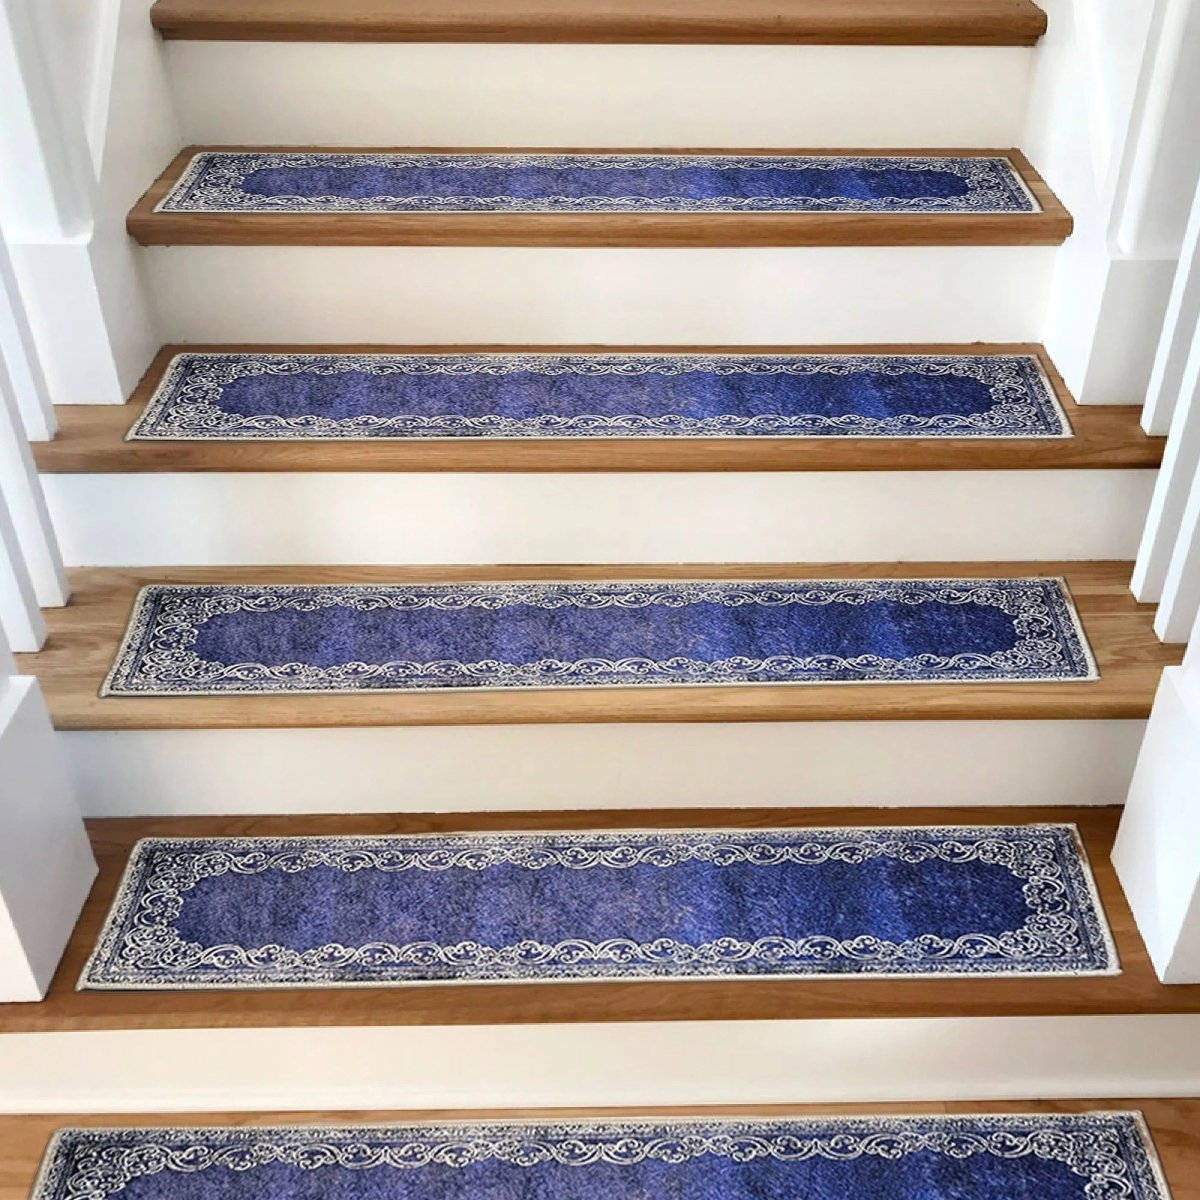 Framed Stair Rug, Stair Carpet, Aesthetic Stair Runner, Ultra Thin Stair Mat, Modern Step Pad, Non-Slip Rug, Machine Washable Rug, - Slips Away - 1651922644_4233203604 -